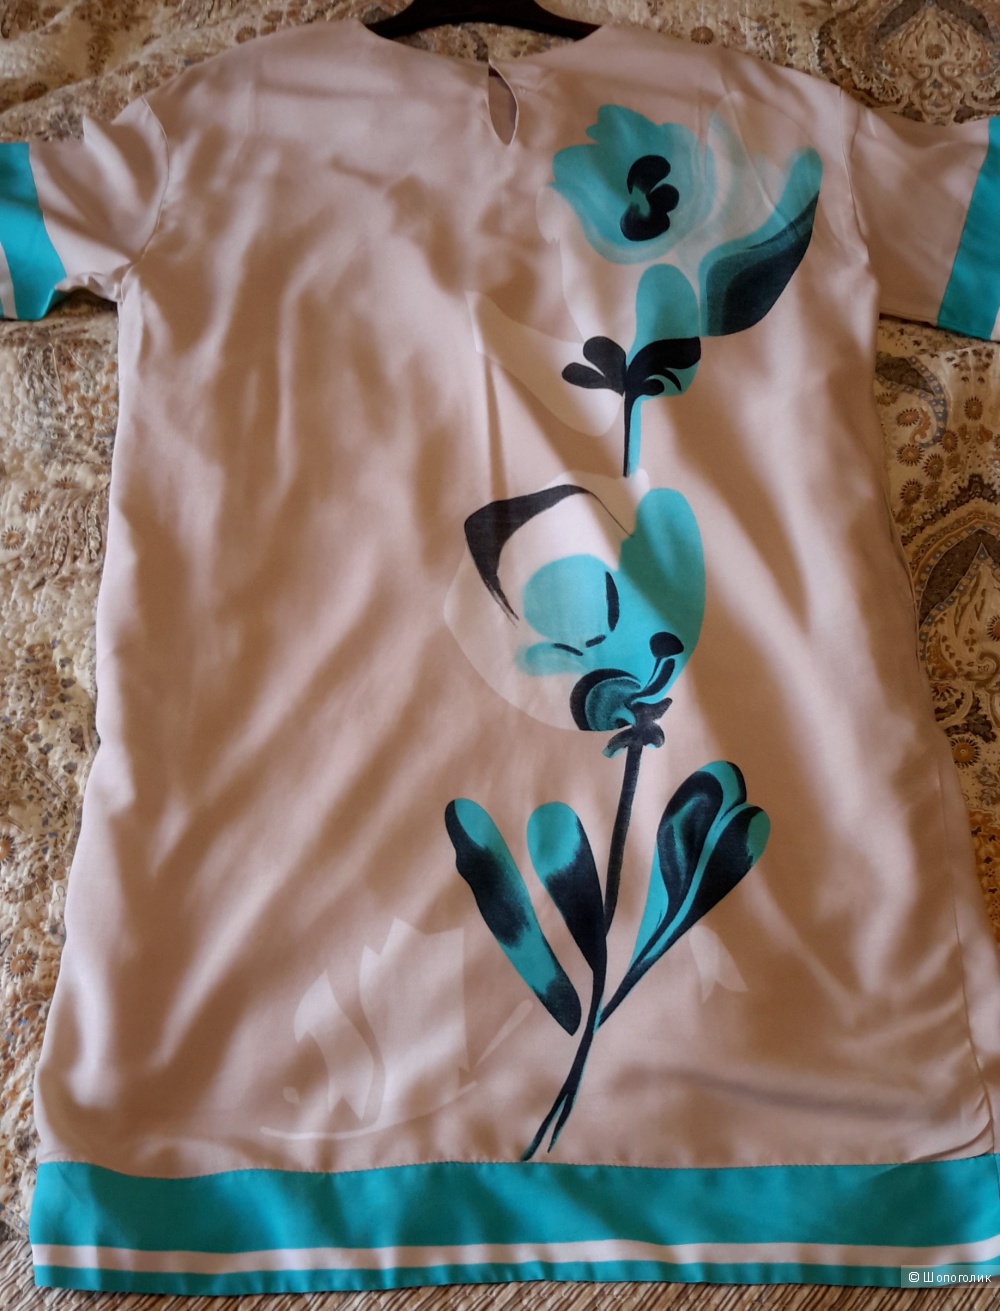 Платье Lo из коллекции Petale размер 44, но большемерит-  на 48